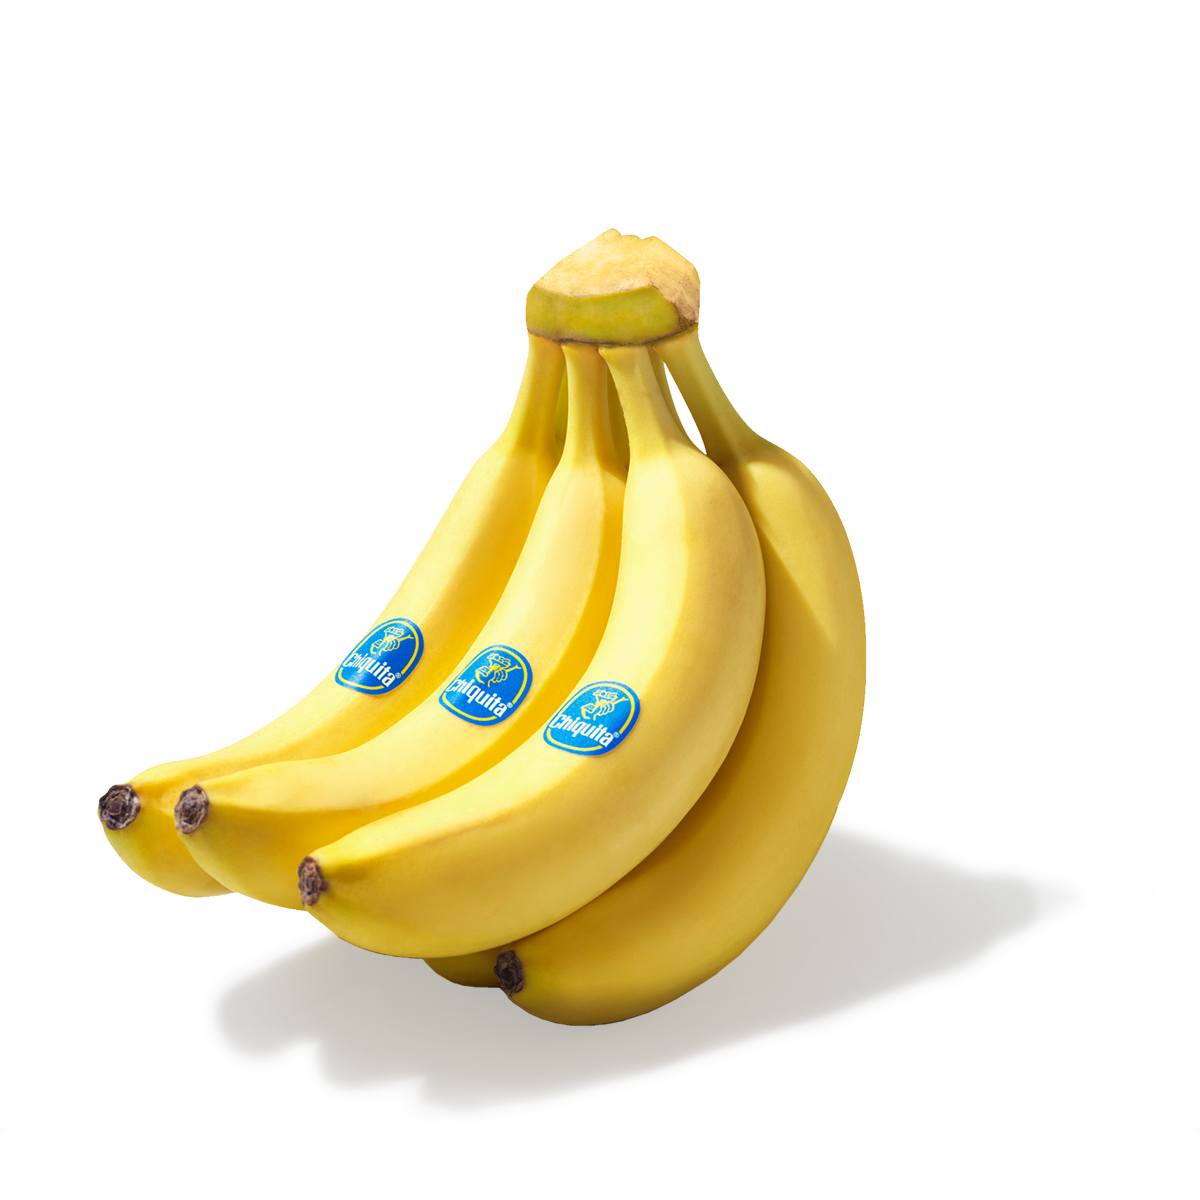 B-DAY Chiquita fruits banana